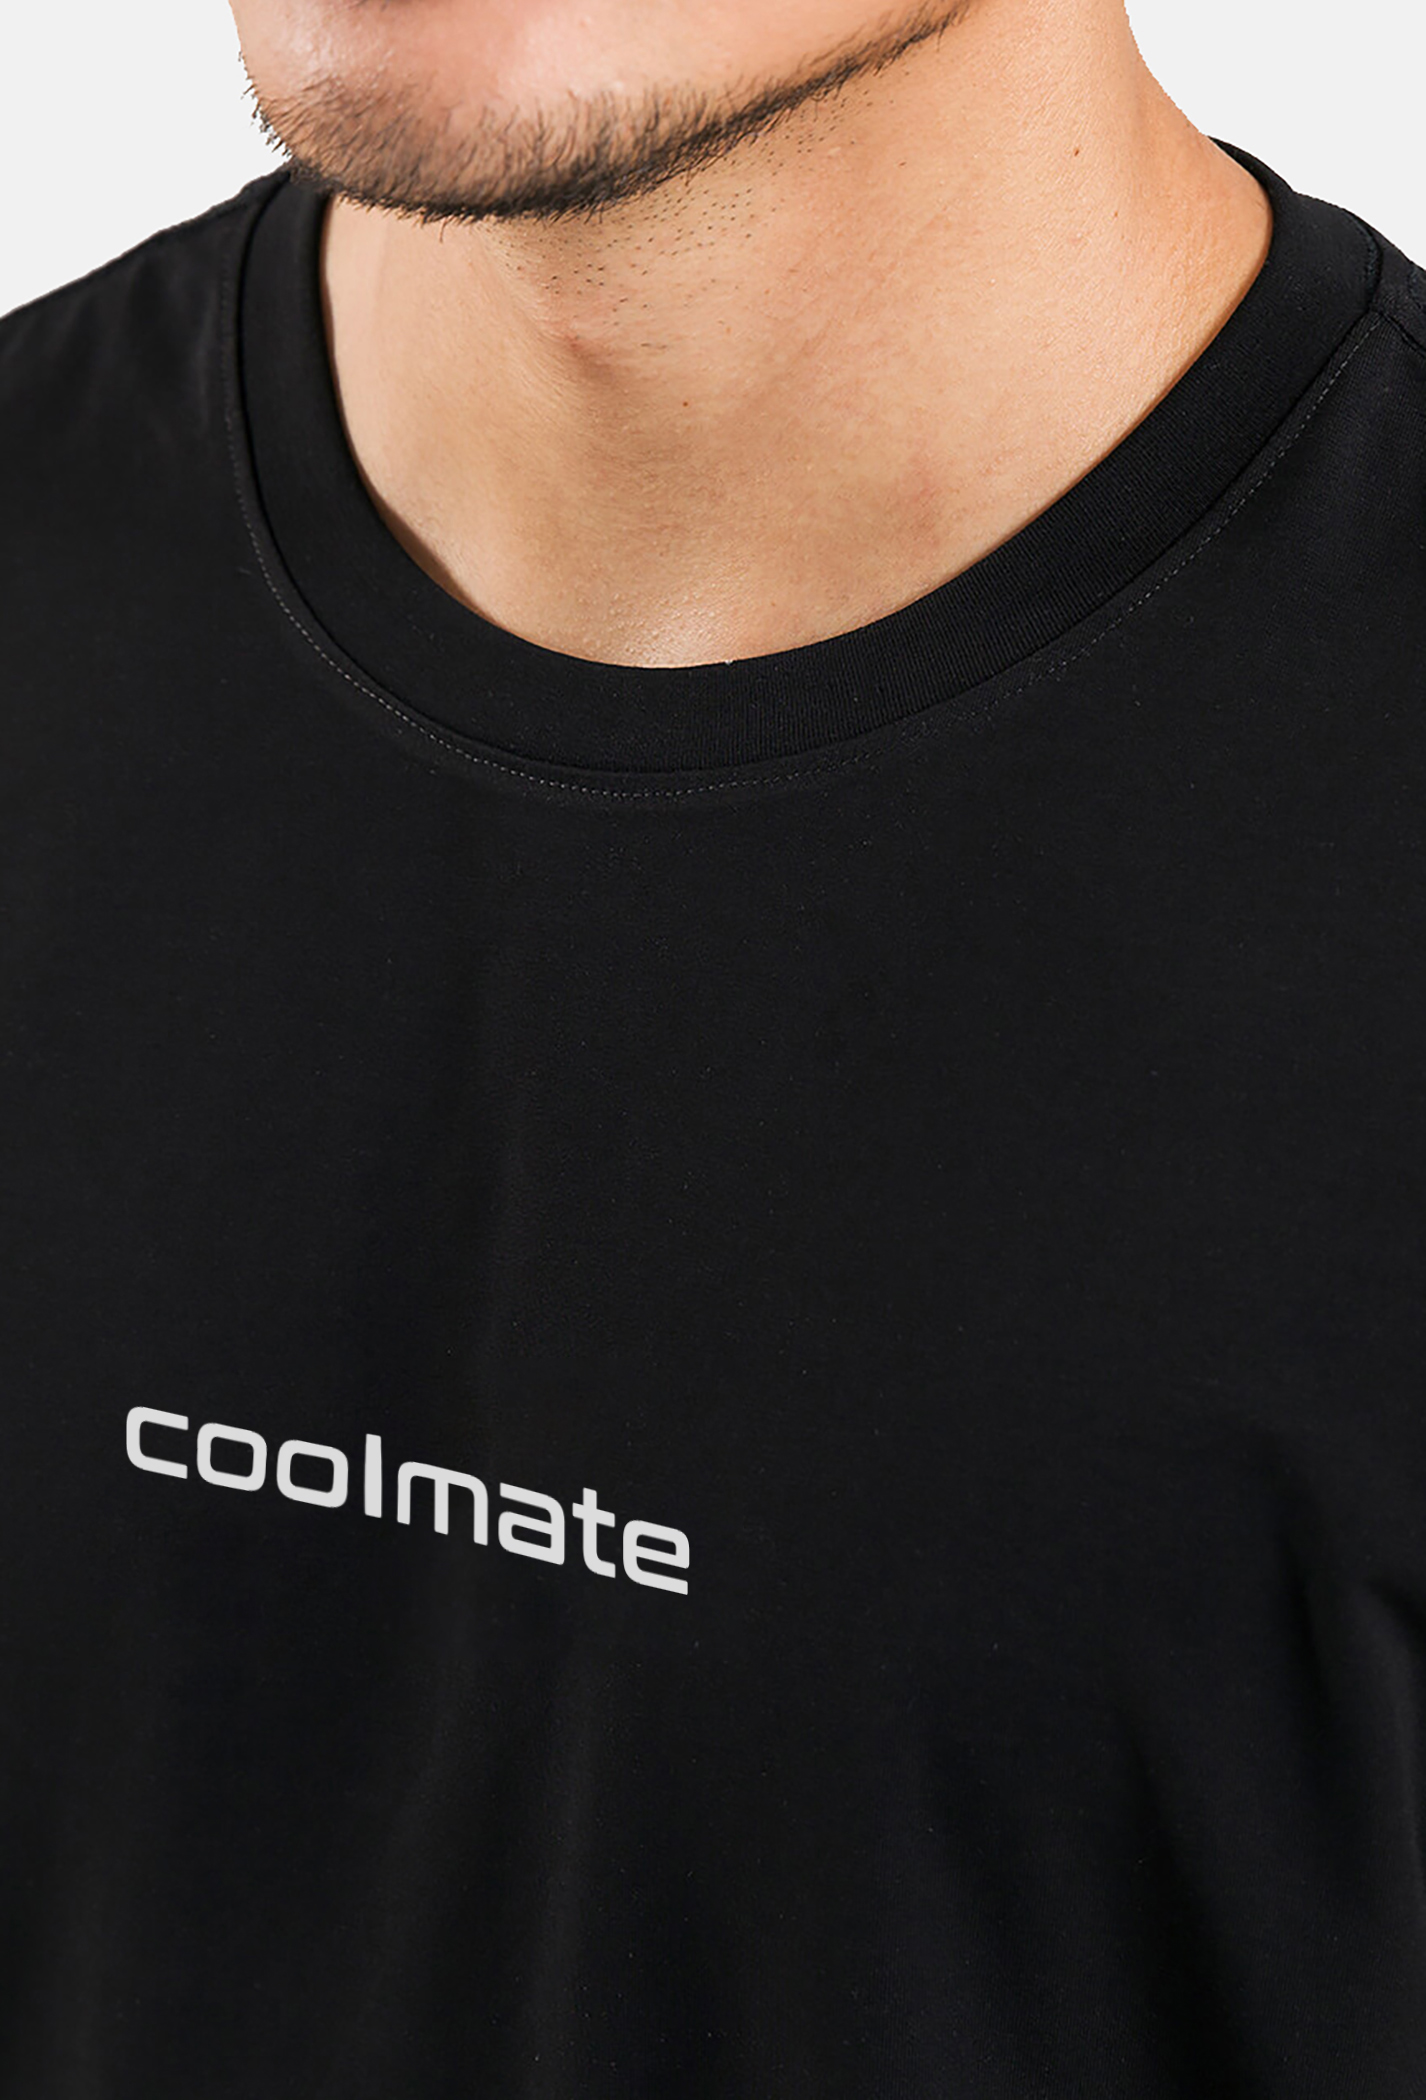 Áo thun nam in Coolmate Cotton Compact phiên bản Premium Đen 3